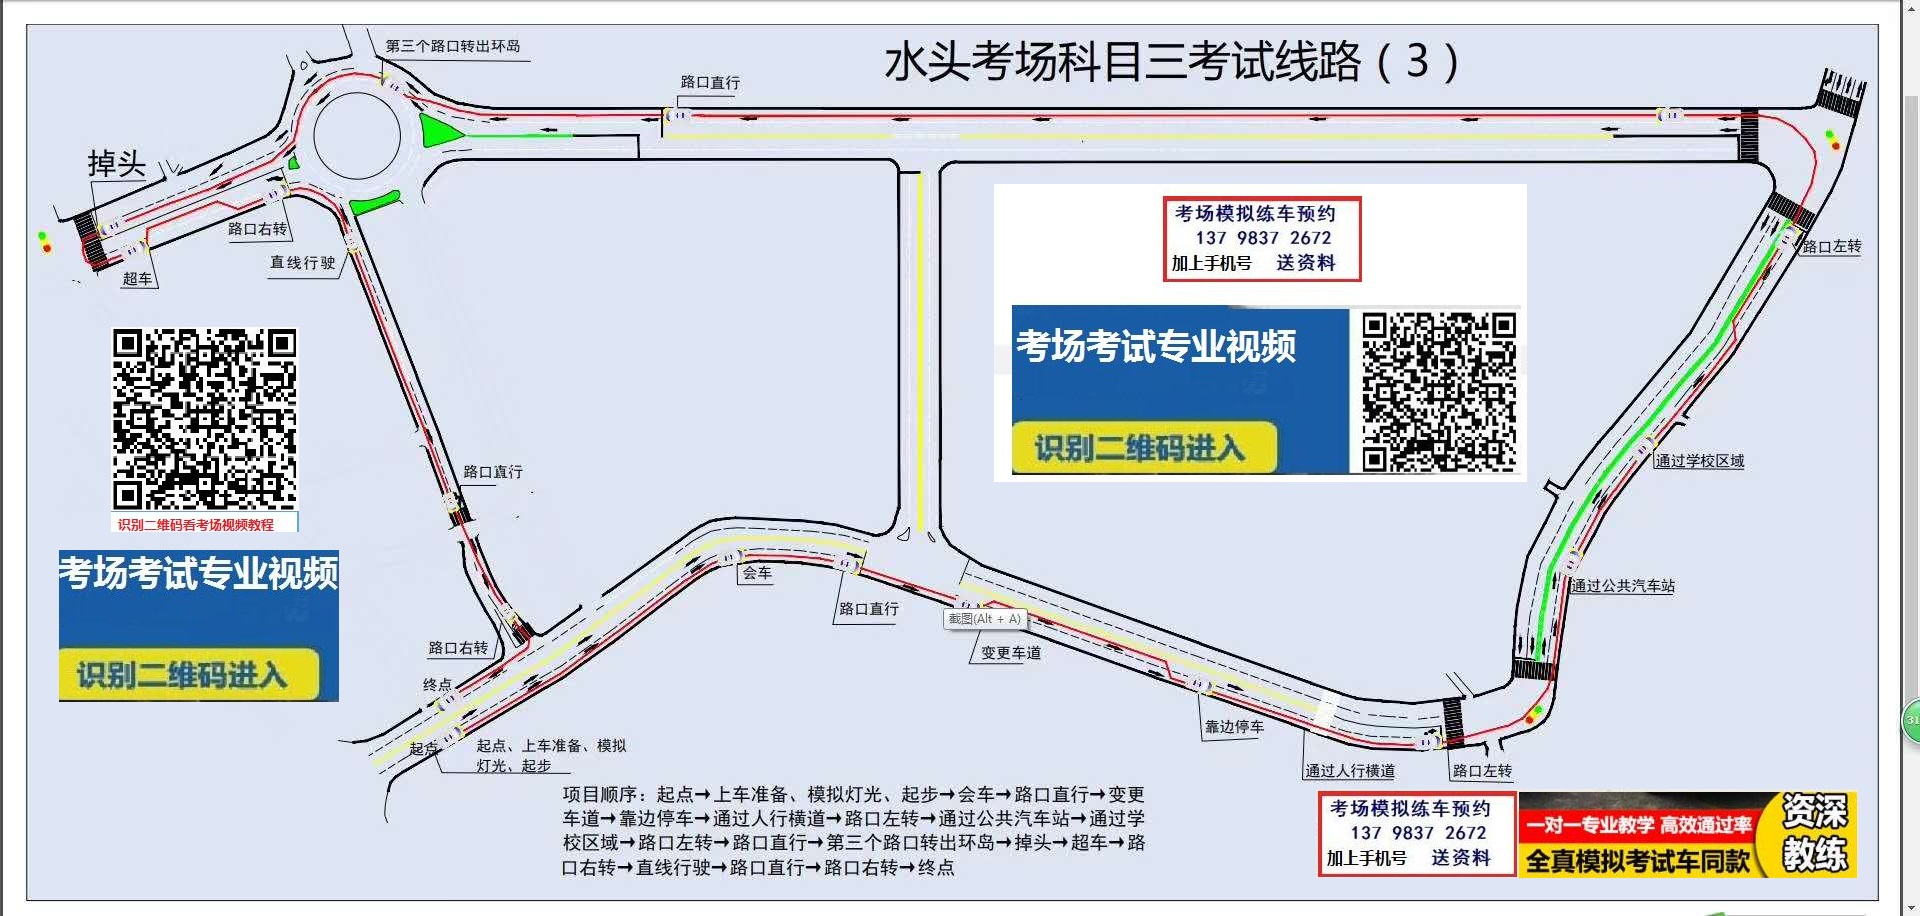 淮滨规划 - 3dmax模型下载-3dmax模型库-3dmax模型免费下载-3D模型模型库-3D模型中文网